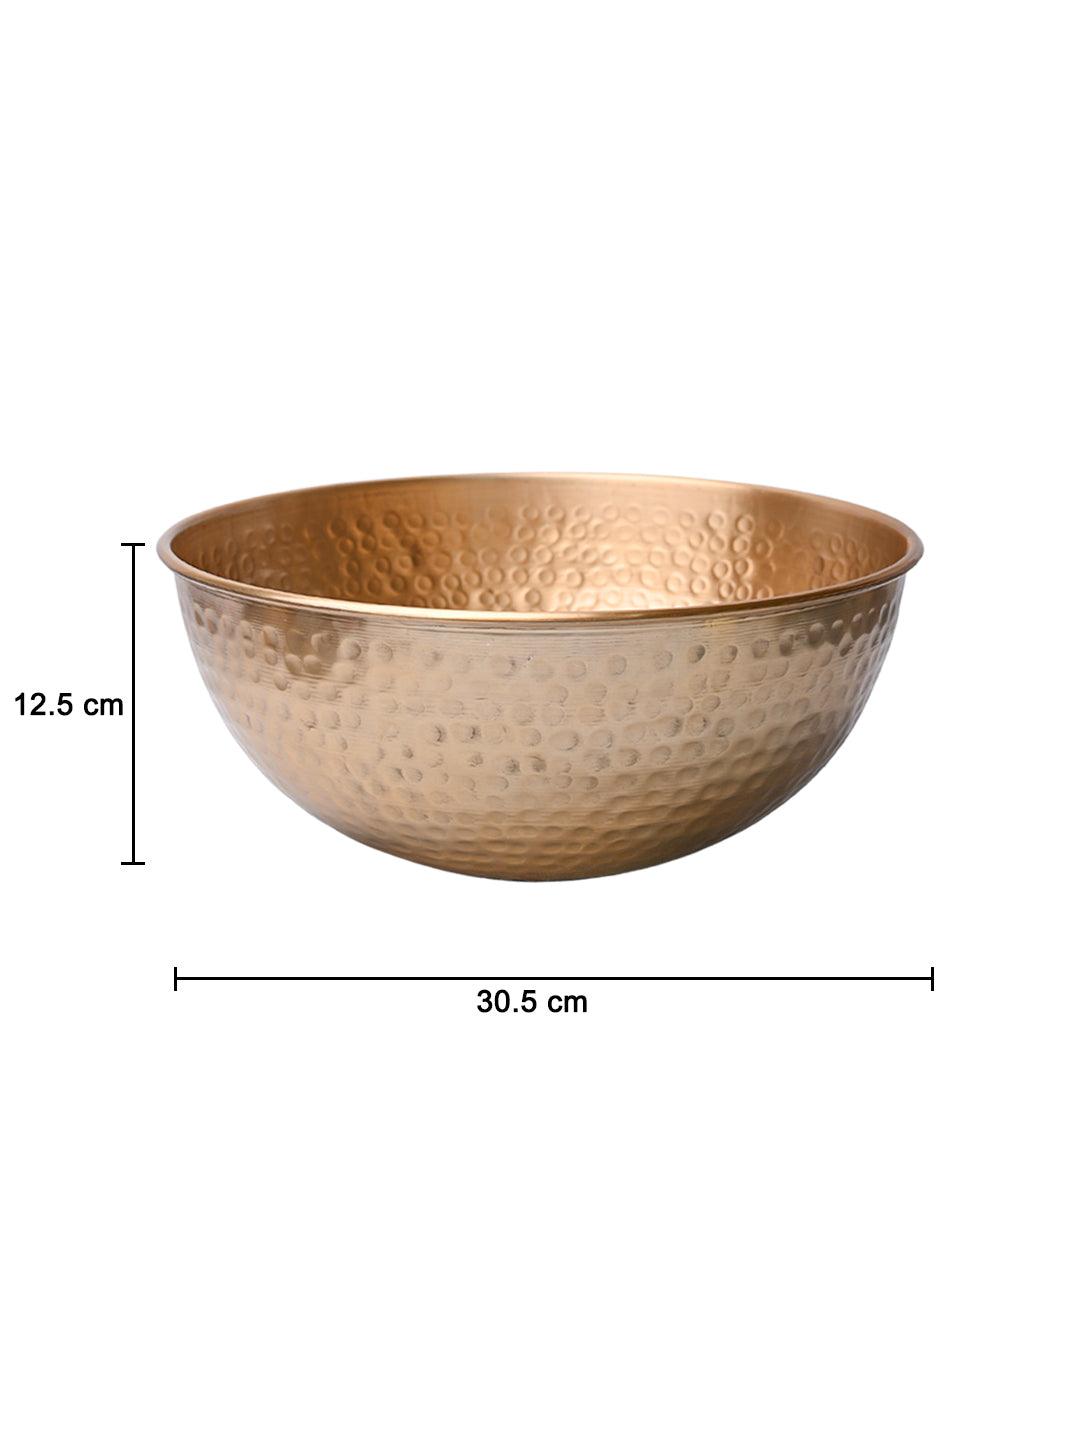 VON CASA Decorative Bowl